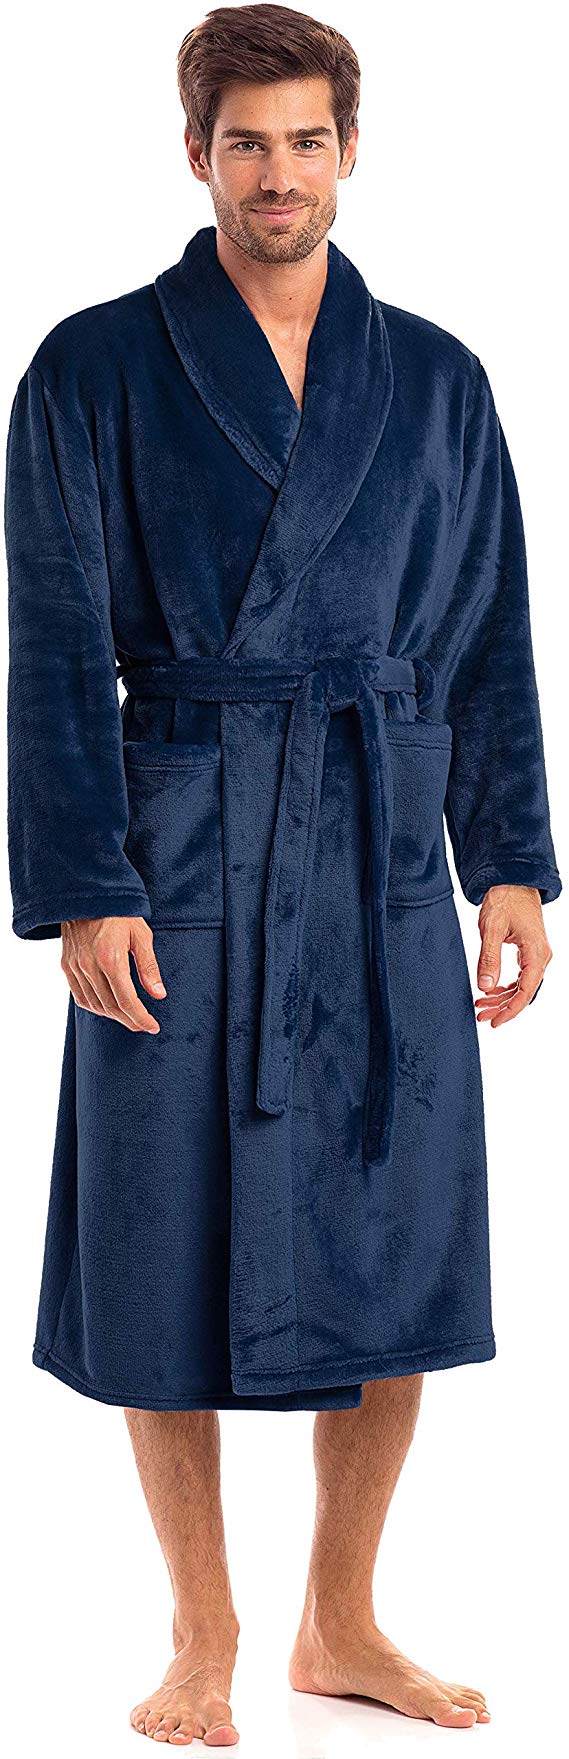 Thread Republic Luxurious Men’s Plush Fleece Robe, Spa Collection Warm Bathrobe